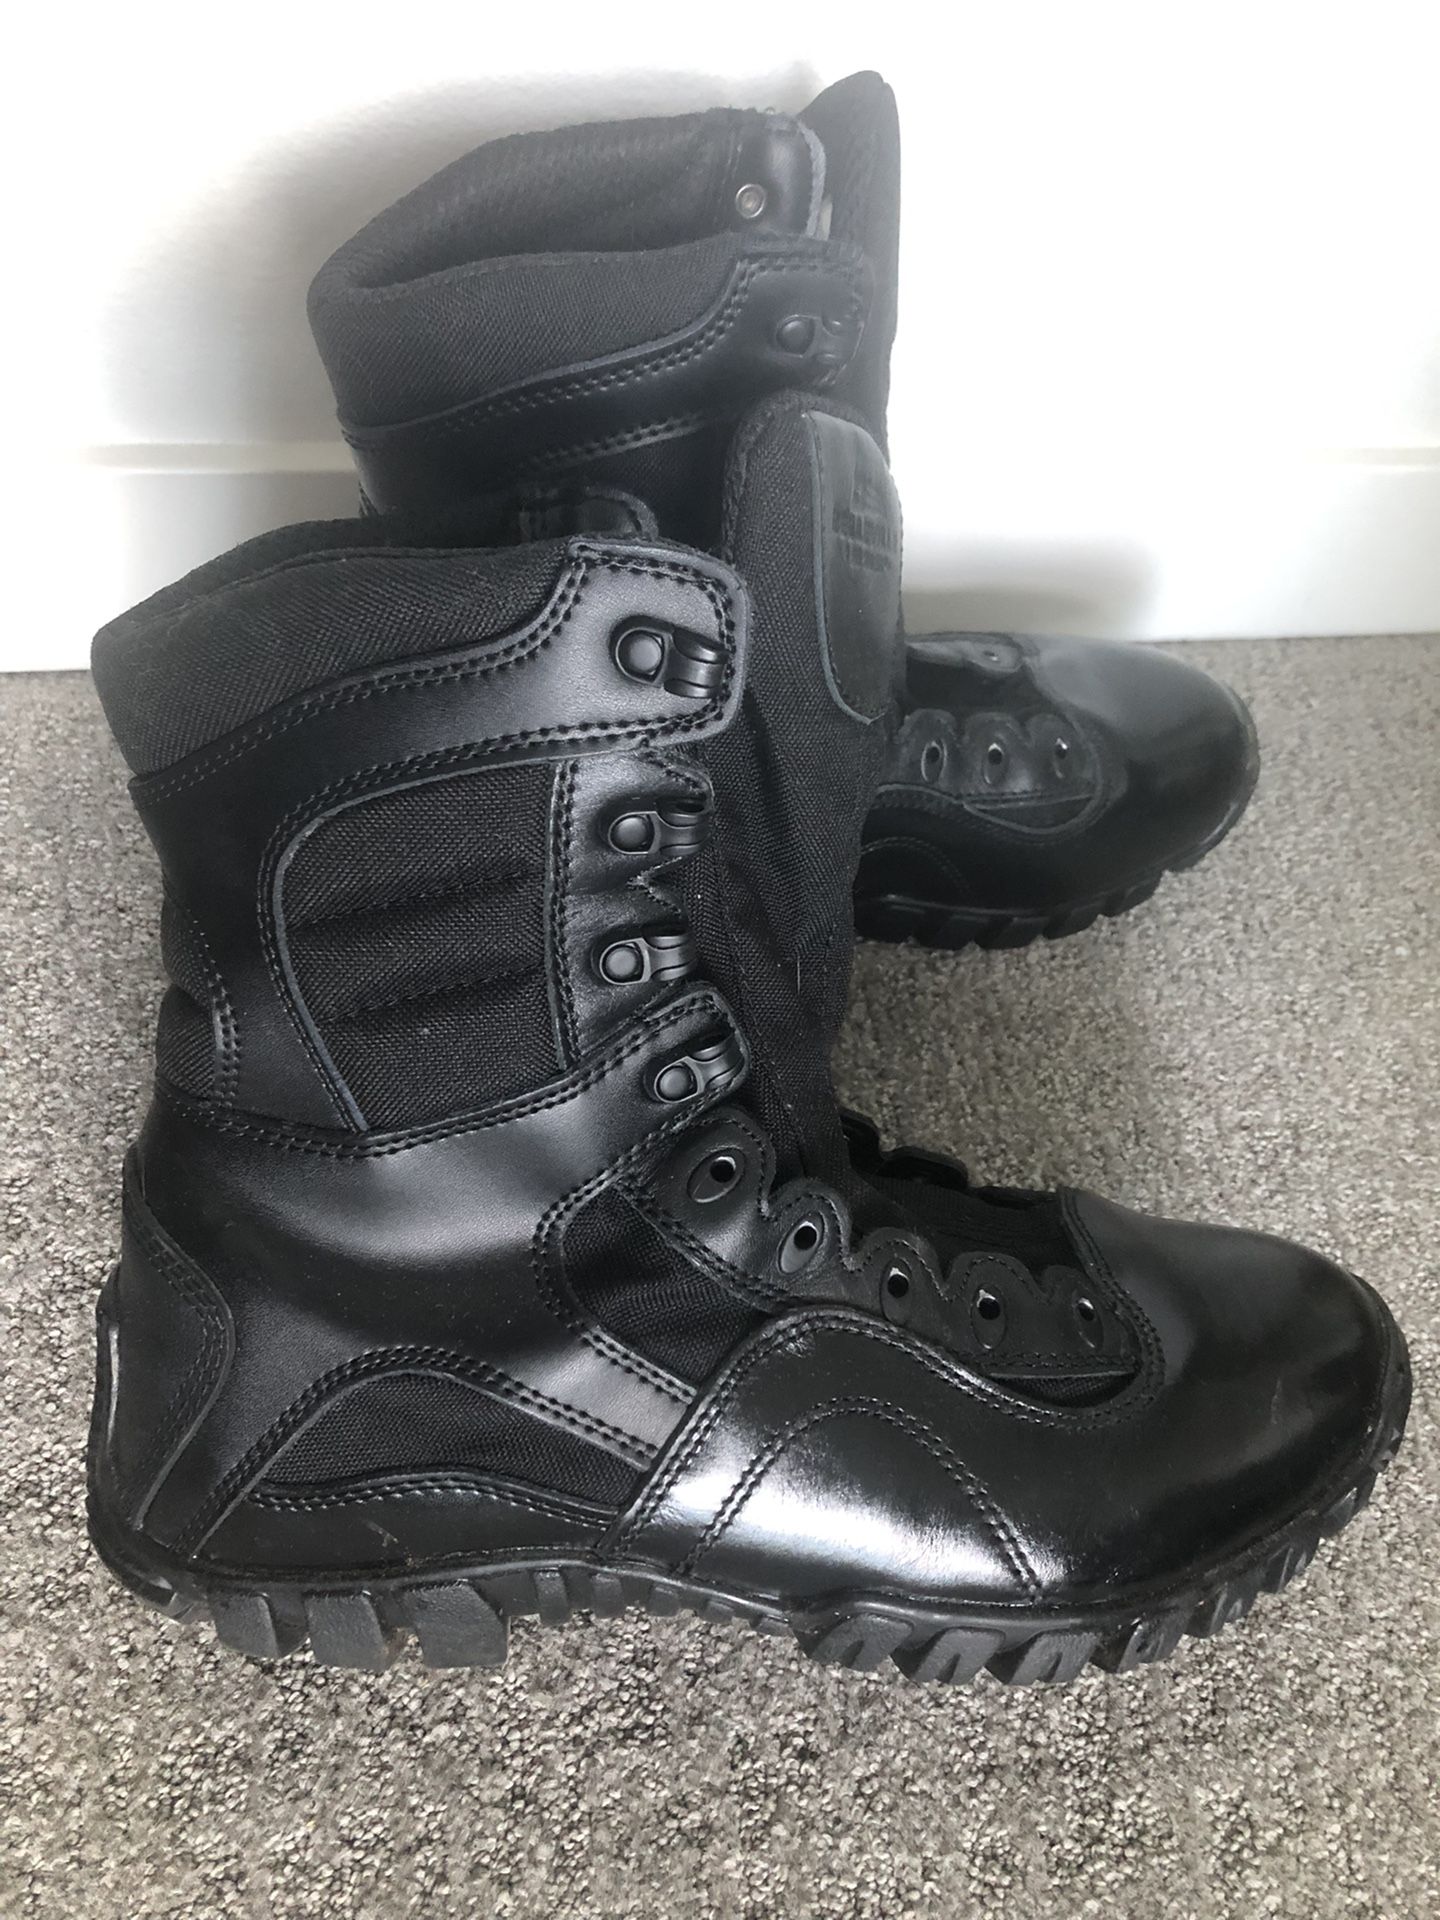 men's boots, size 11.5